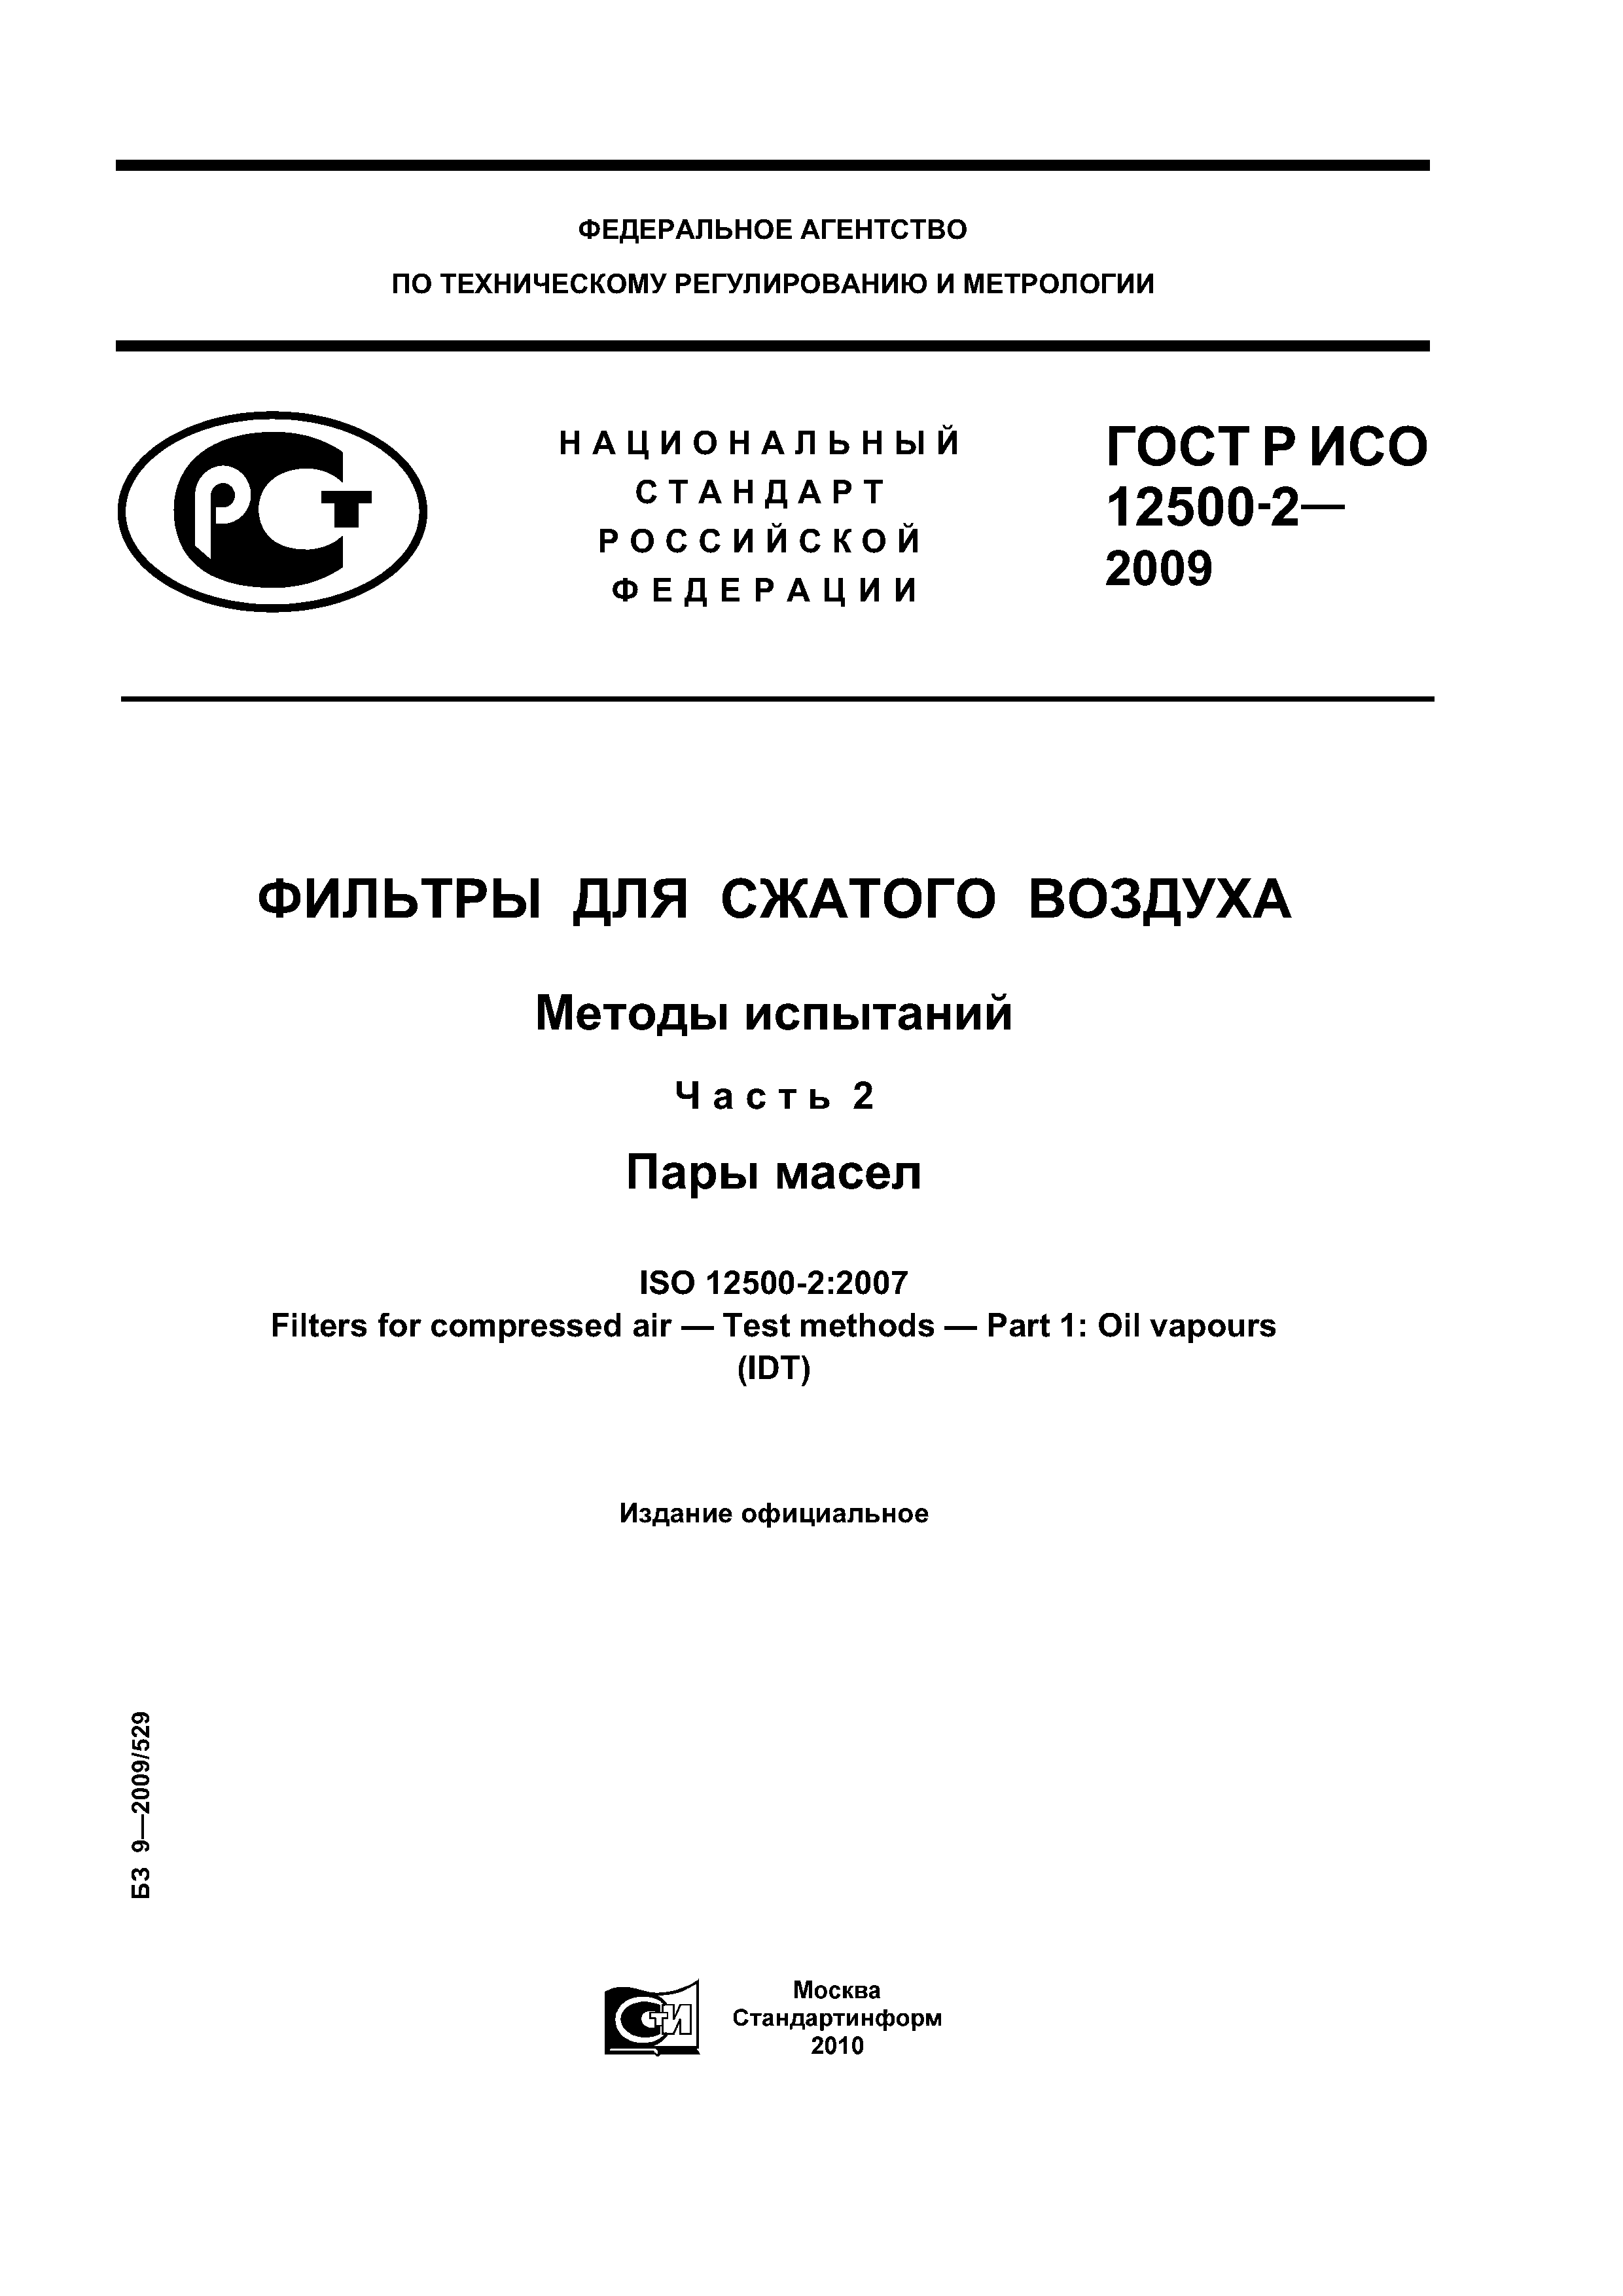 ГОСТ Р ИСО 12500-2-2009